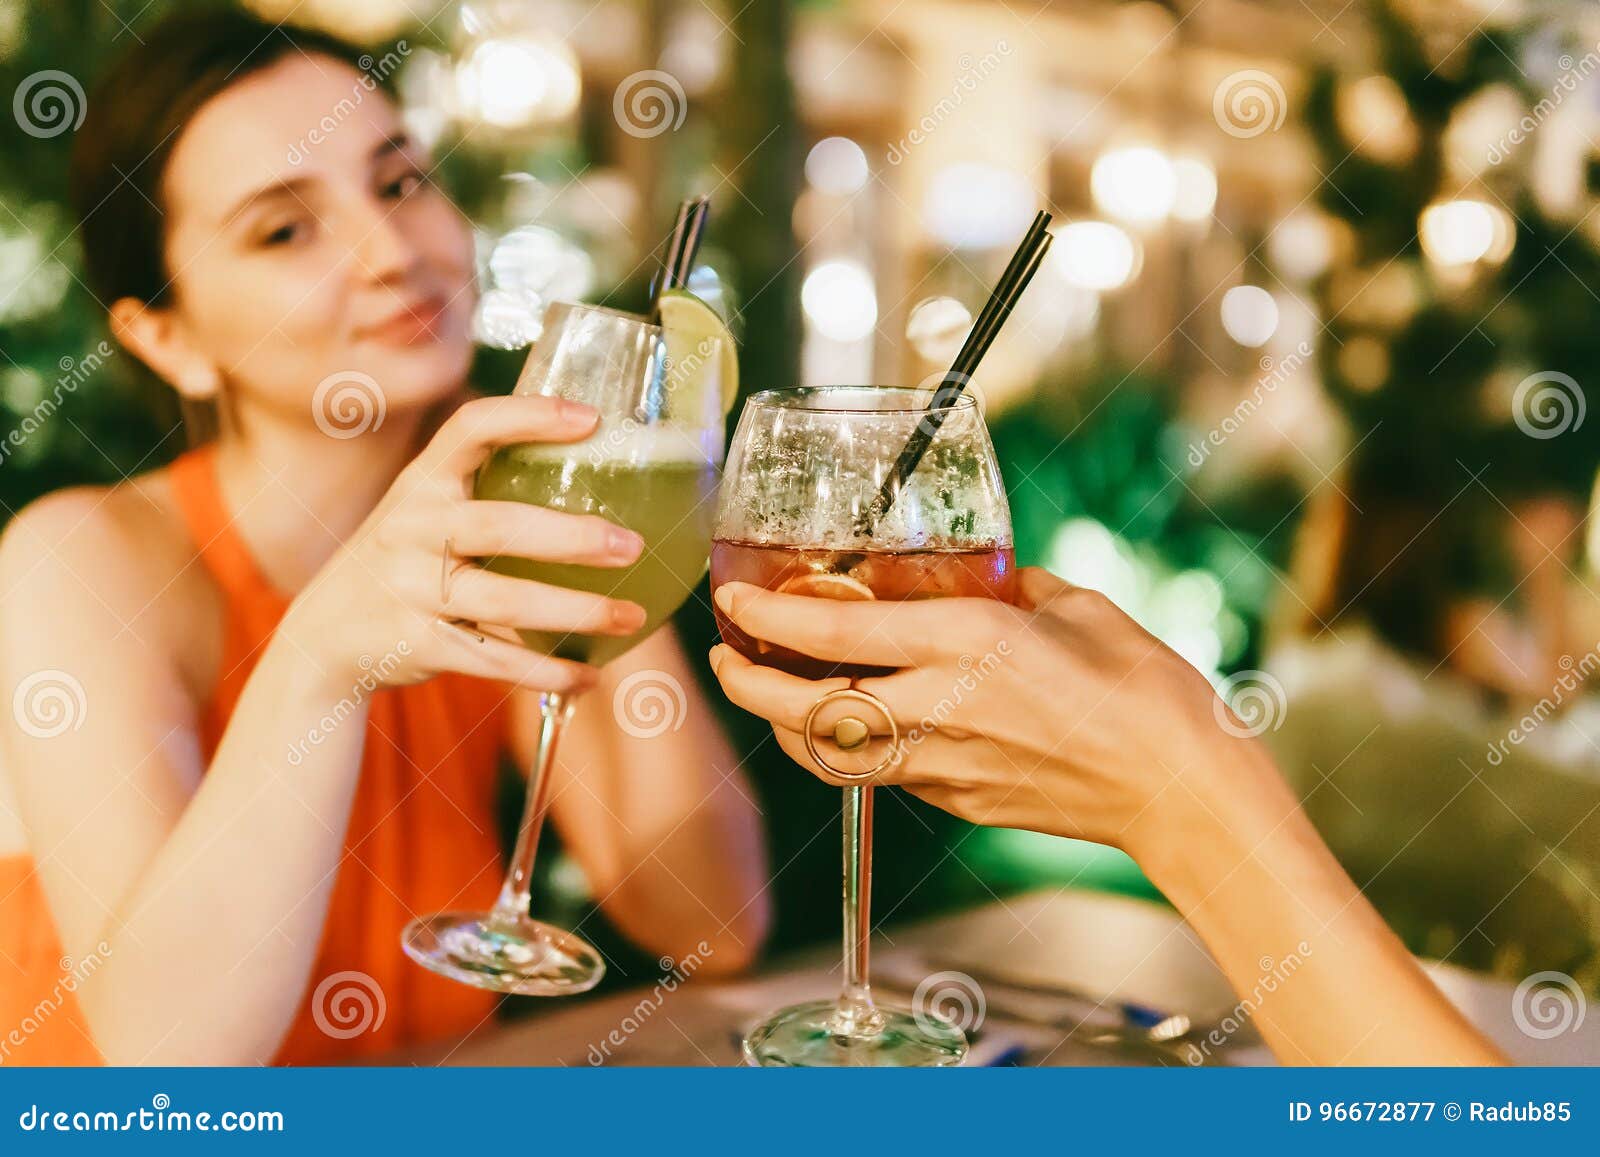 Девочки пьют шампанское с кисок